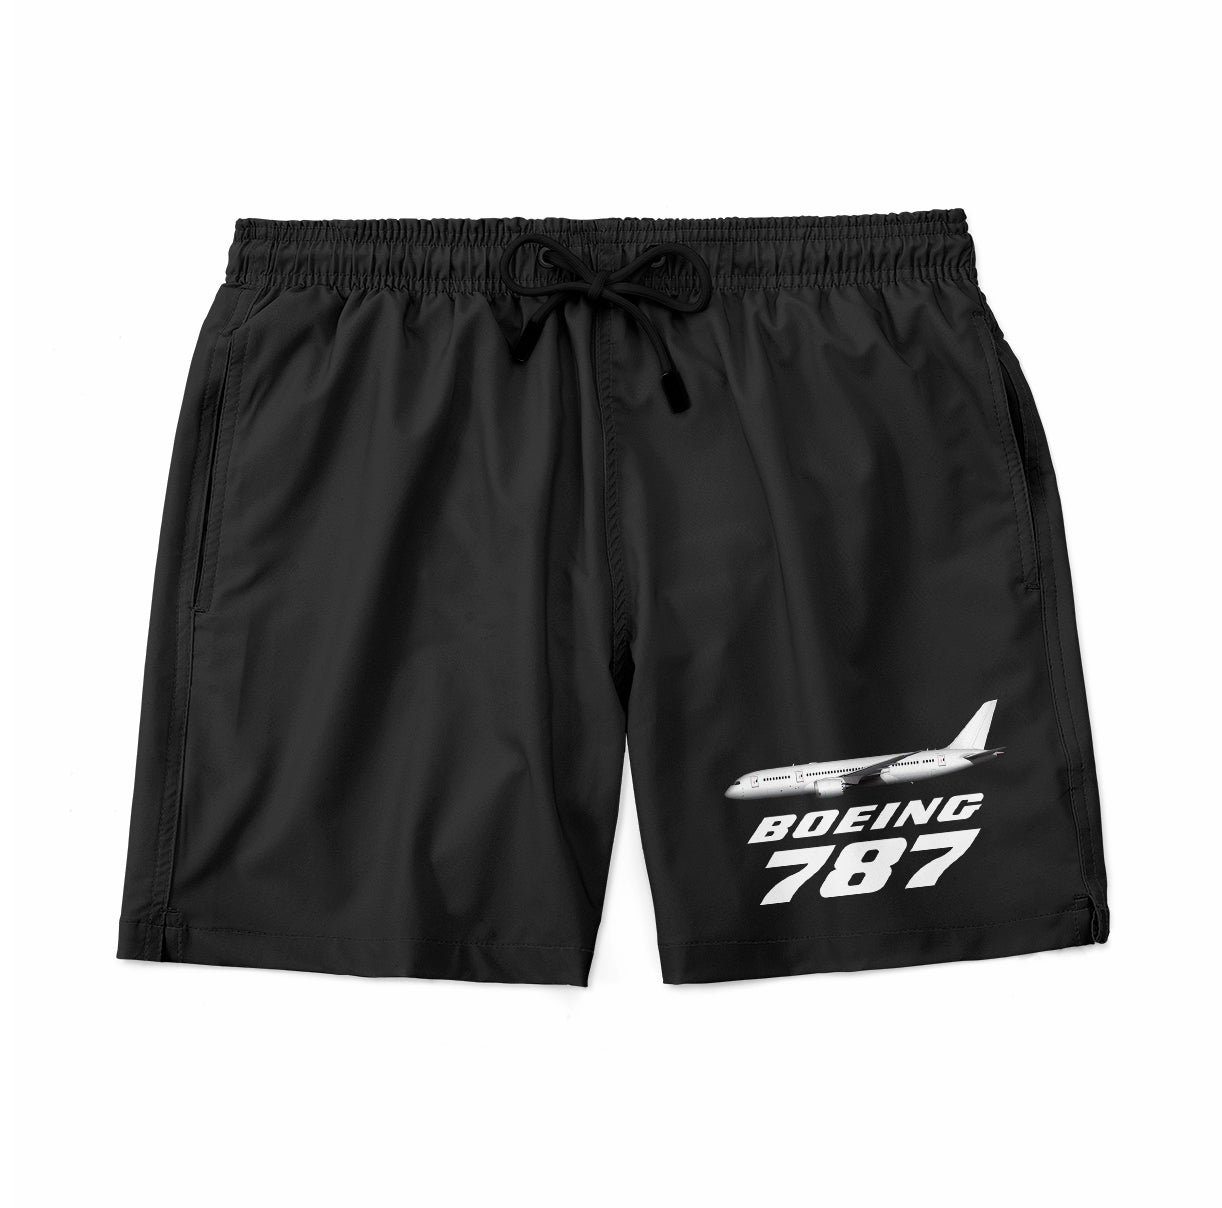 The Boeing 787 Designed Swim Trunks & Shorts